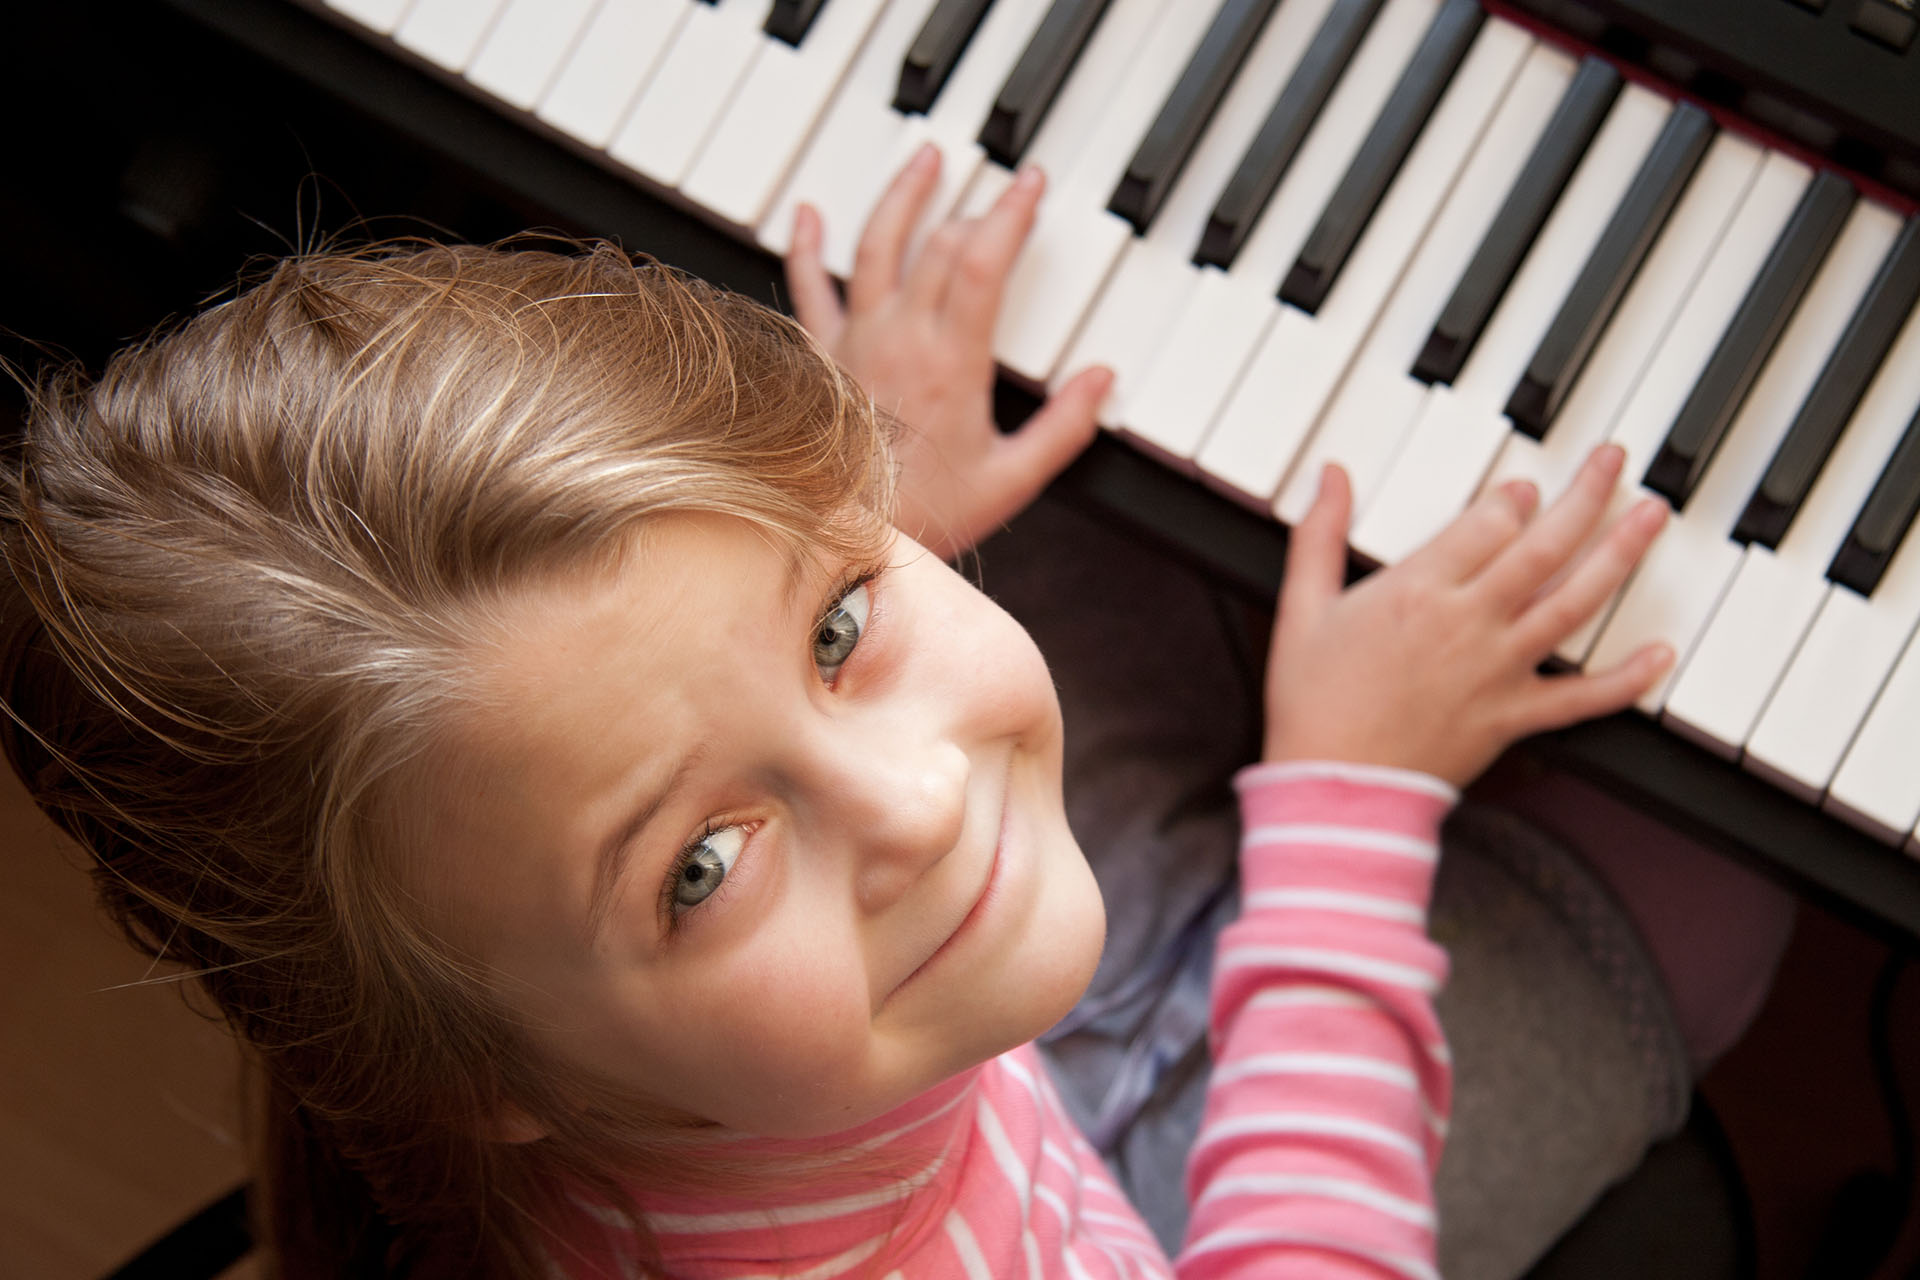 Young girl sitiing at digital  piano